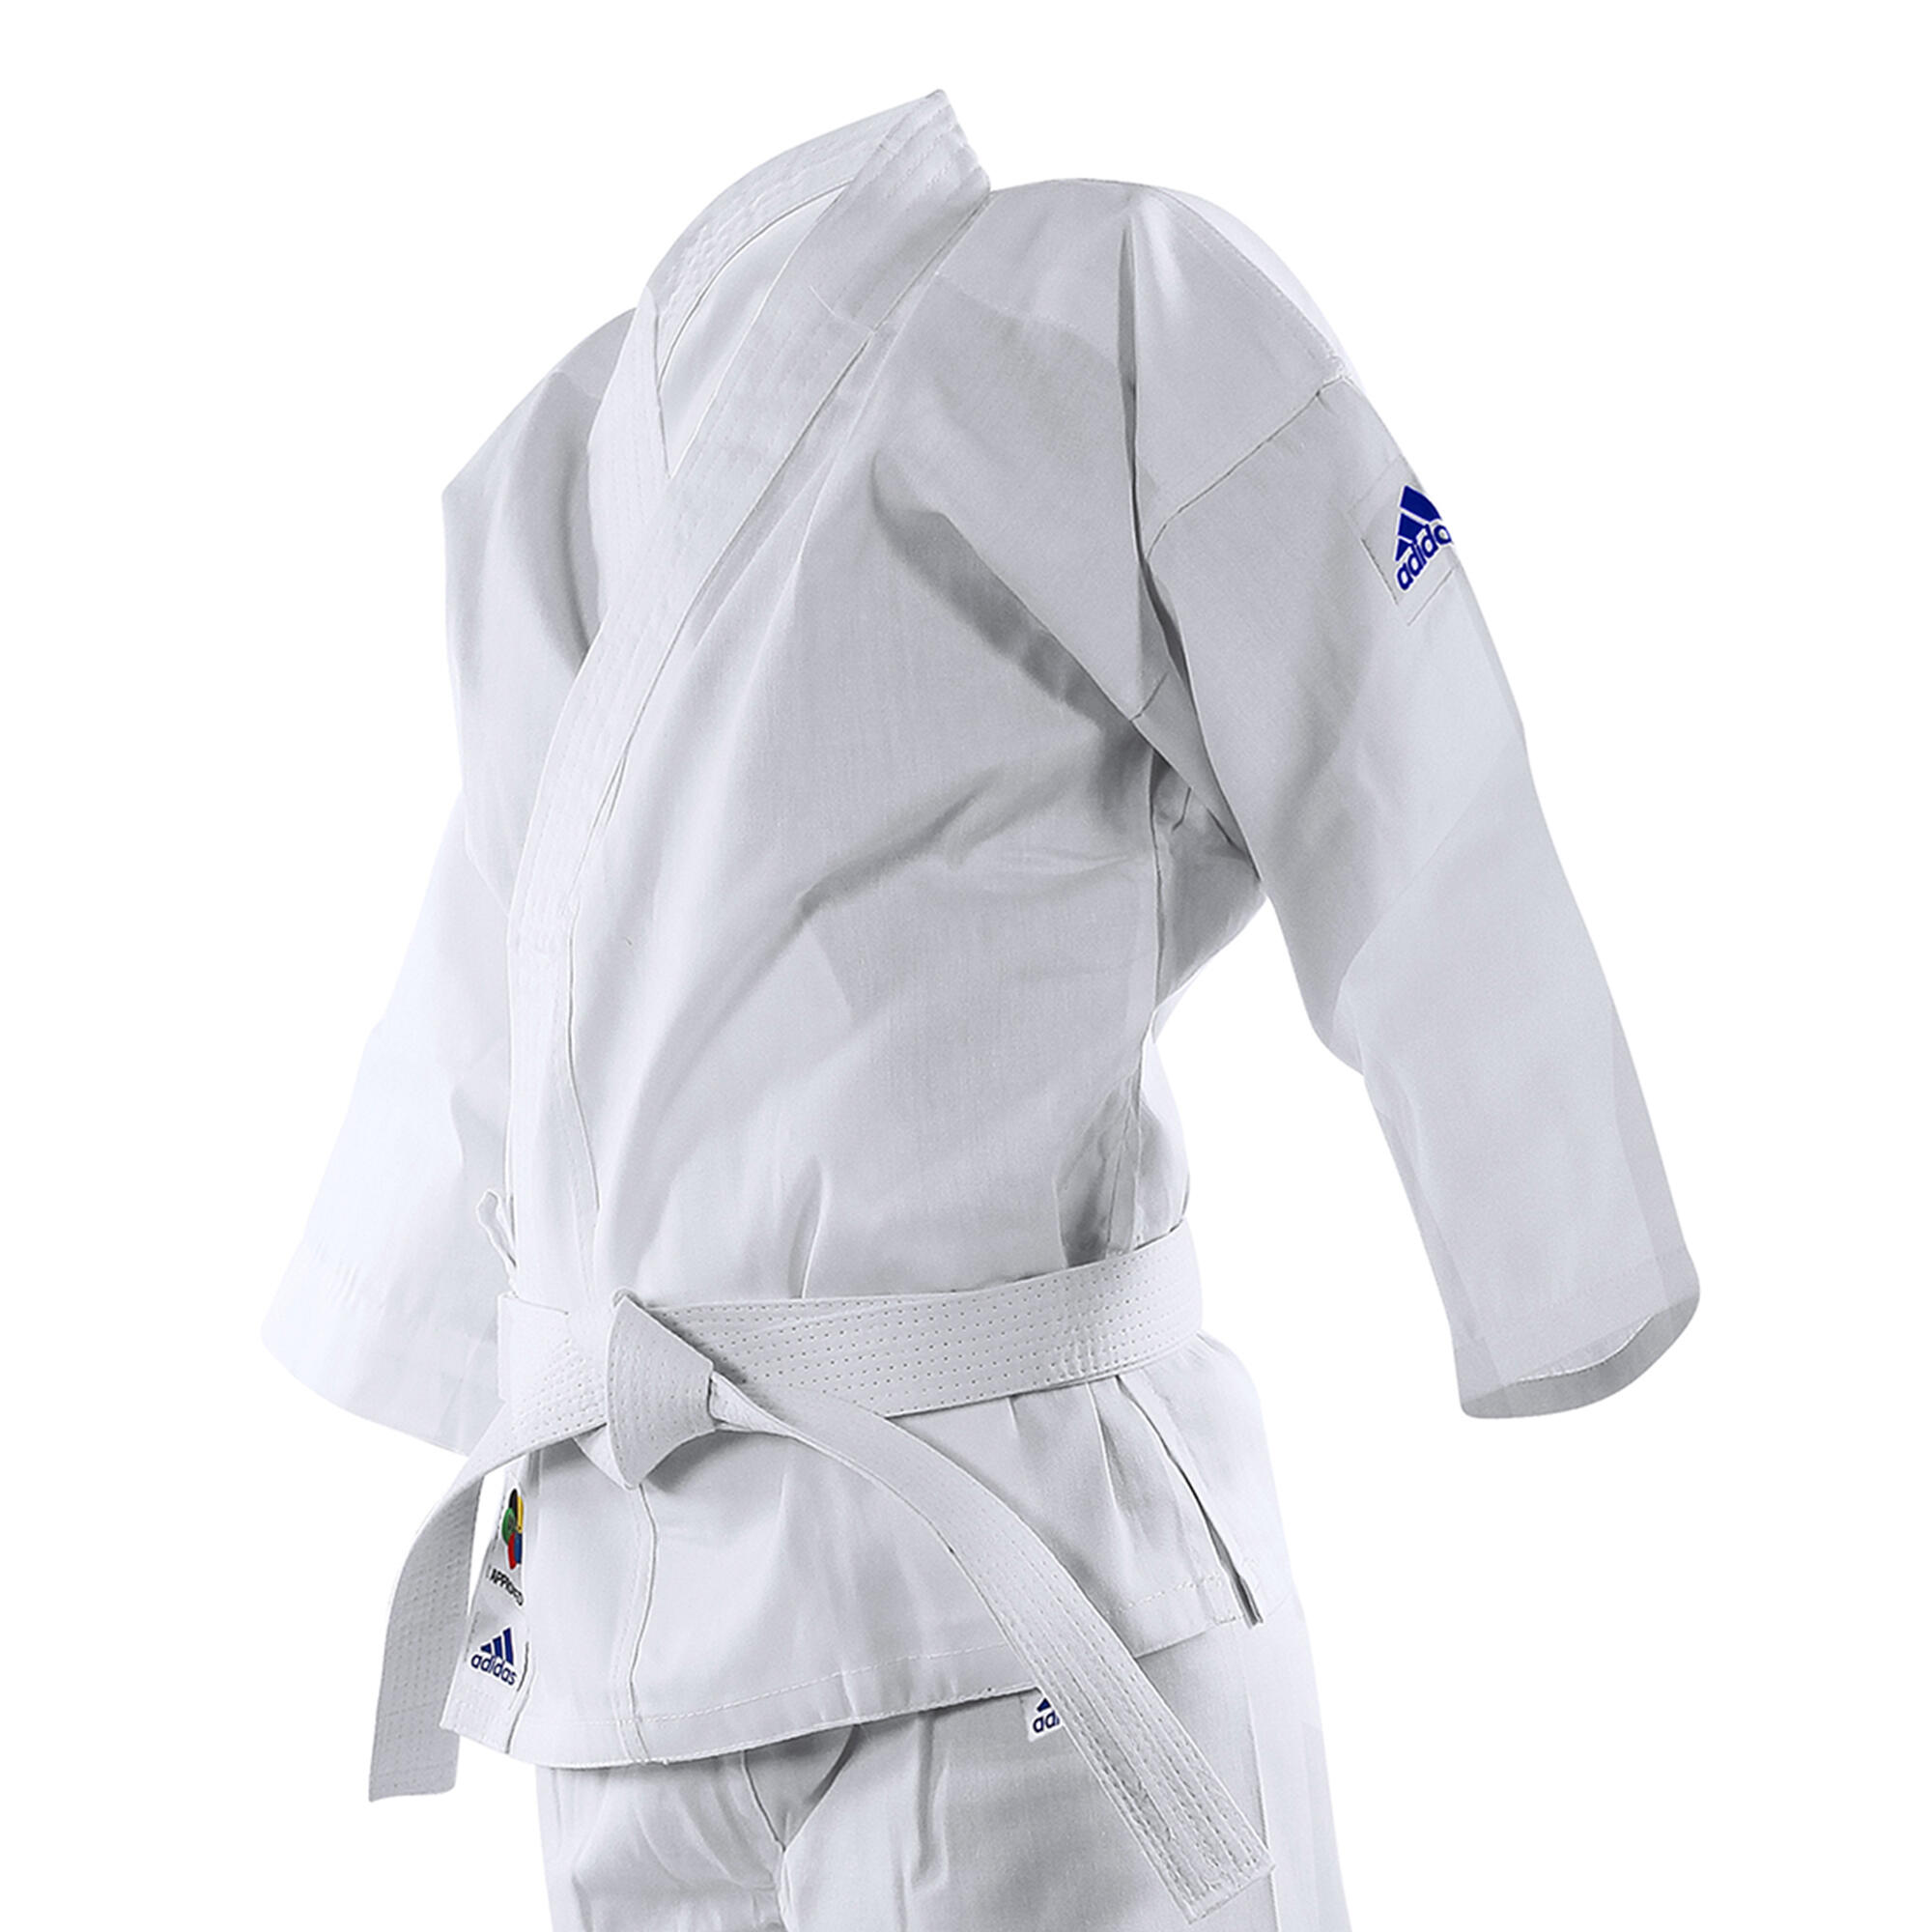 Kids' 2-in-1 Size K200 E Karate Uniform 2/5